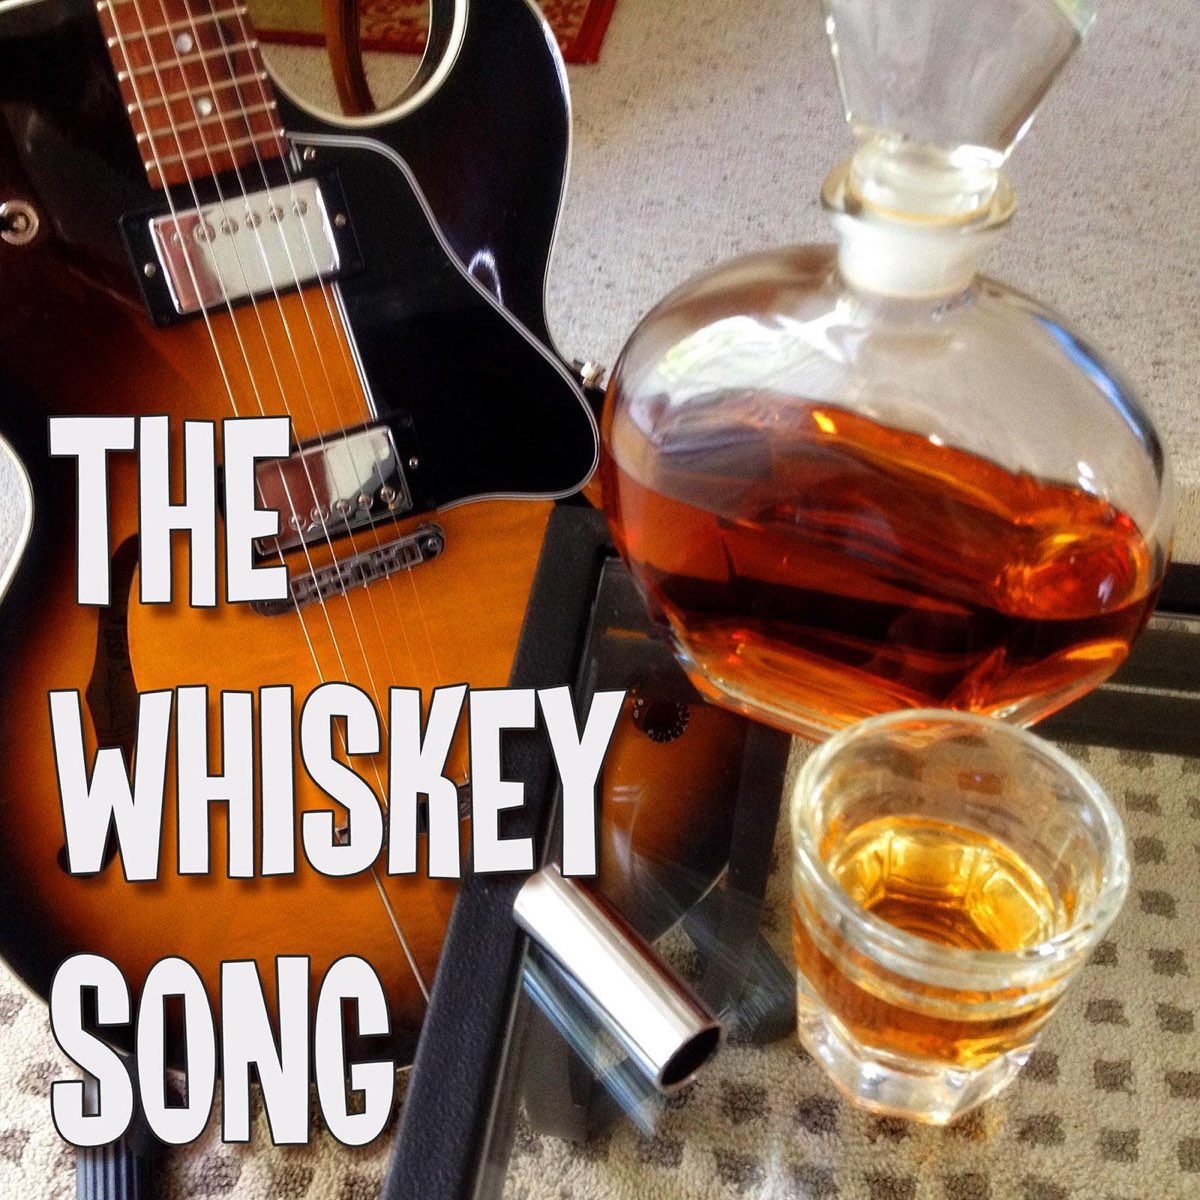 Виски кола и текила песня слушать. Виски блюз. Пластинка Whiskey Blues. Виски блюз картинки. Картинка музыка виски блюз.